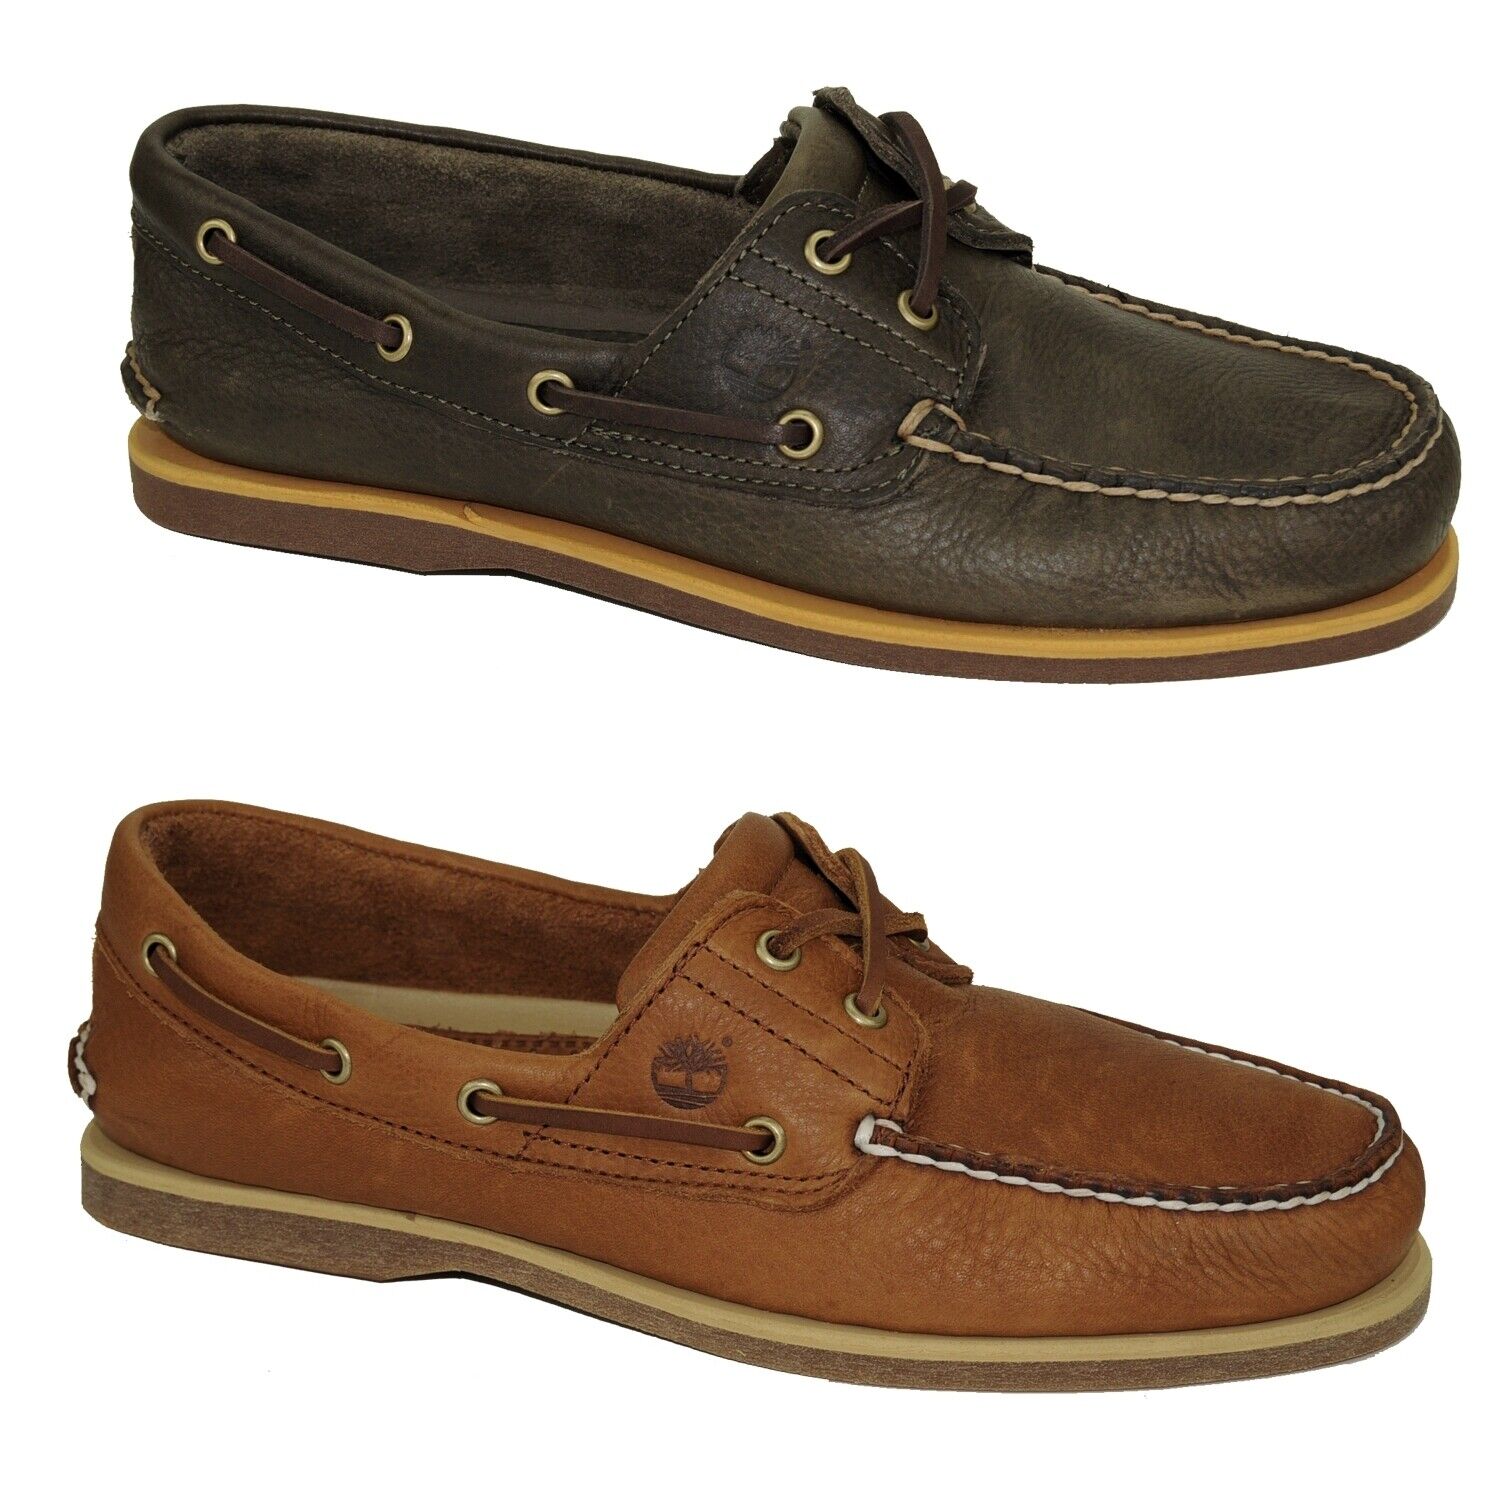 Timberland Classic Boat Shoes 2-Eye Deckschuhe Segelschuhe Herren Schuhe Modell- Farbe A2AFC - Olive Schuhgröße EUR 40 US 7